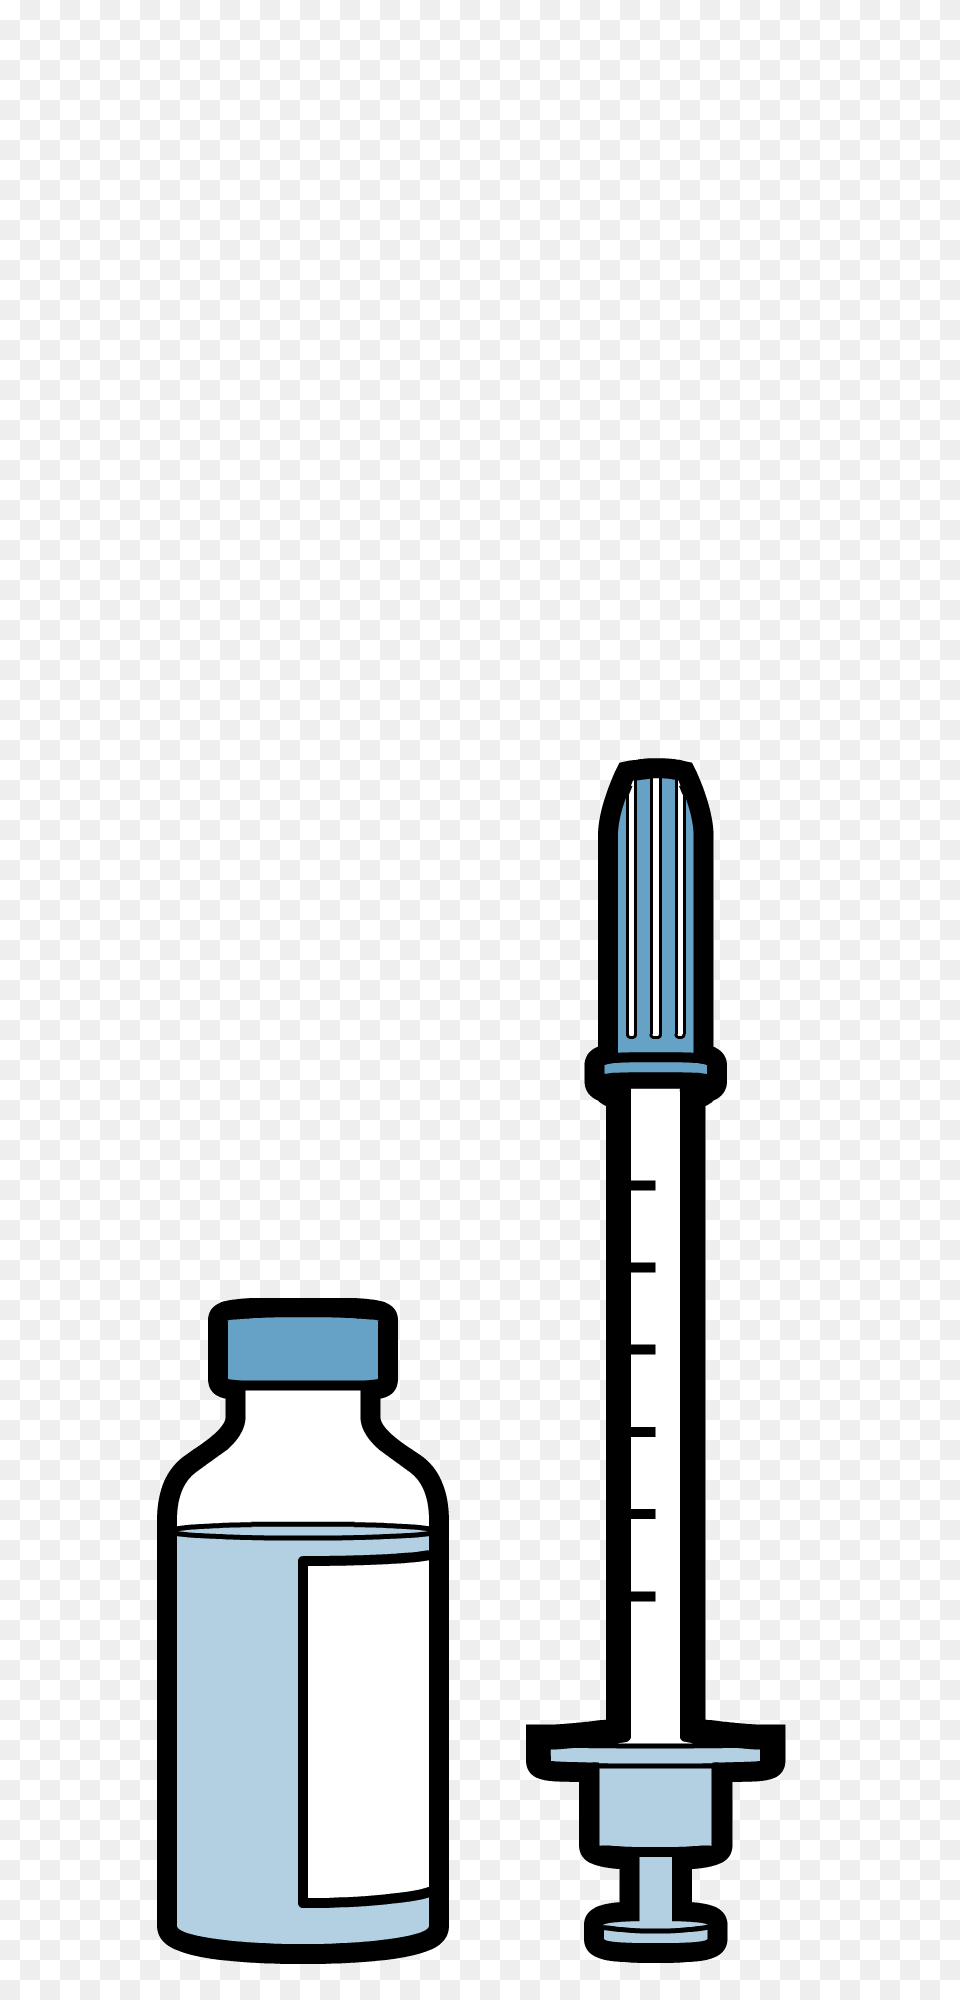 Understanding Insulin, Smoke Pipe, Bottle, Shaker Free Png Download